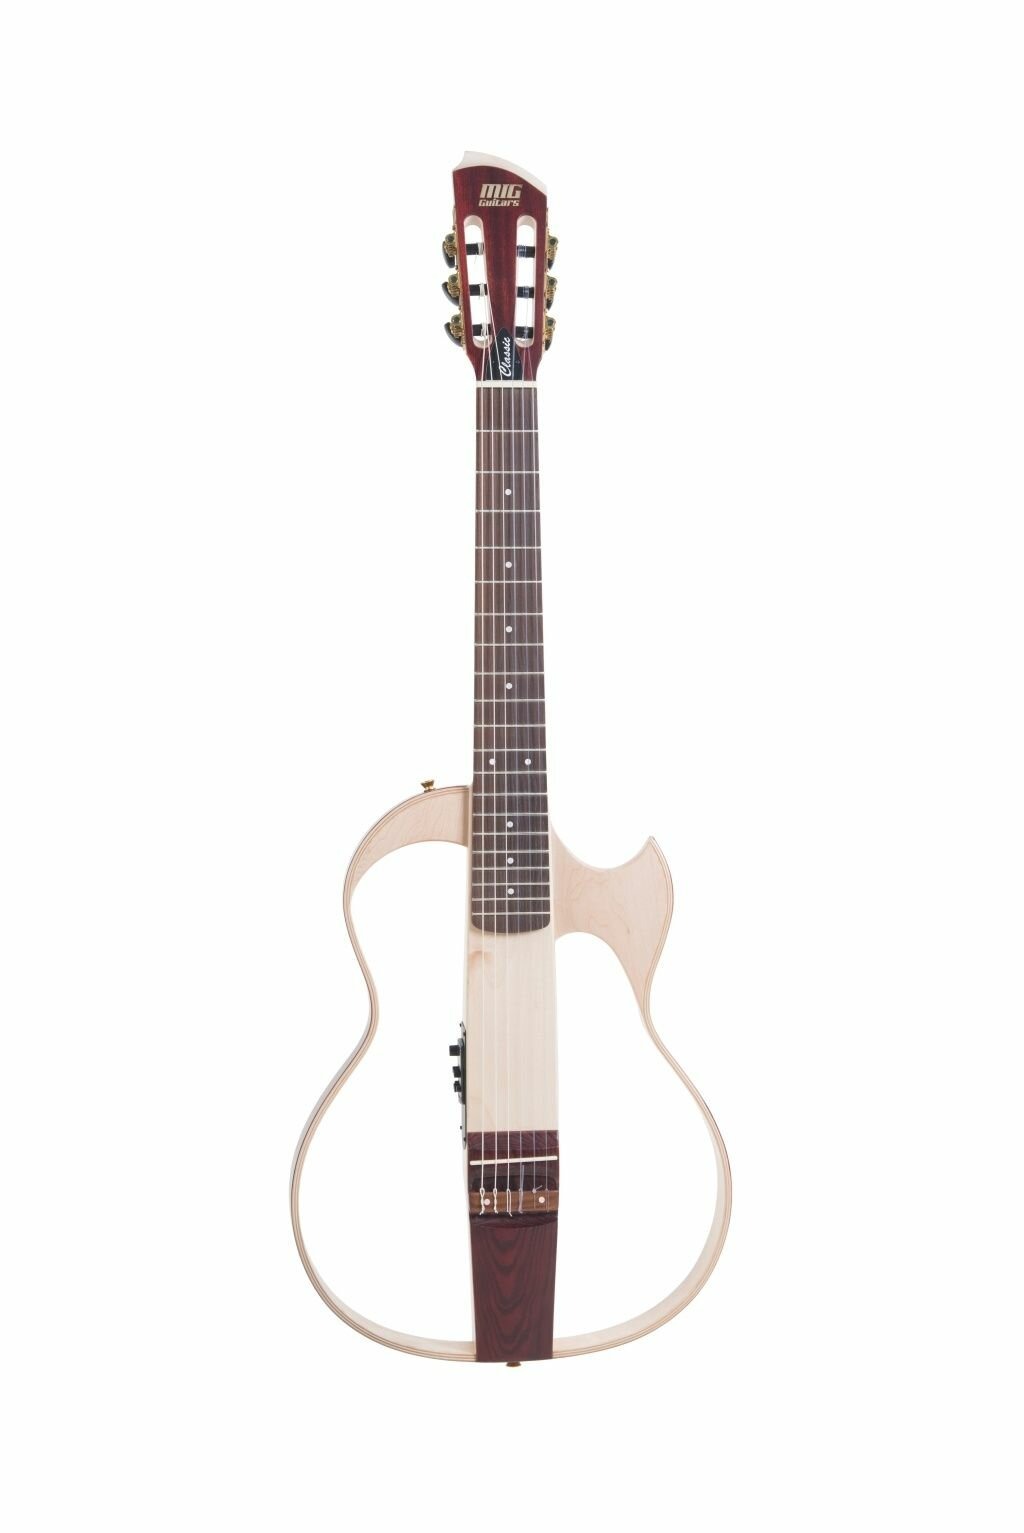 Электроакустические гитары MIG Guitars SG4SAM23 электрическая гитара разделяет металлическую перемычку через пластину втулки втулки кузова для замены гитары